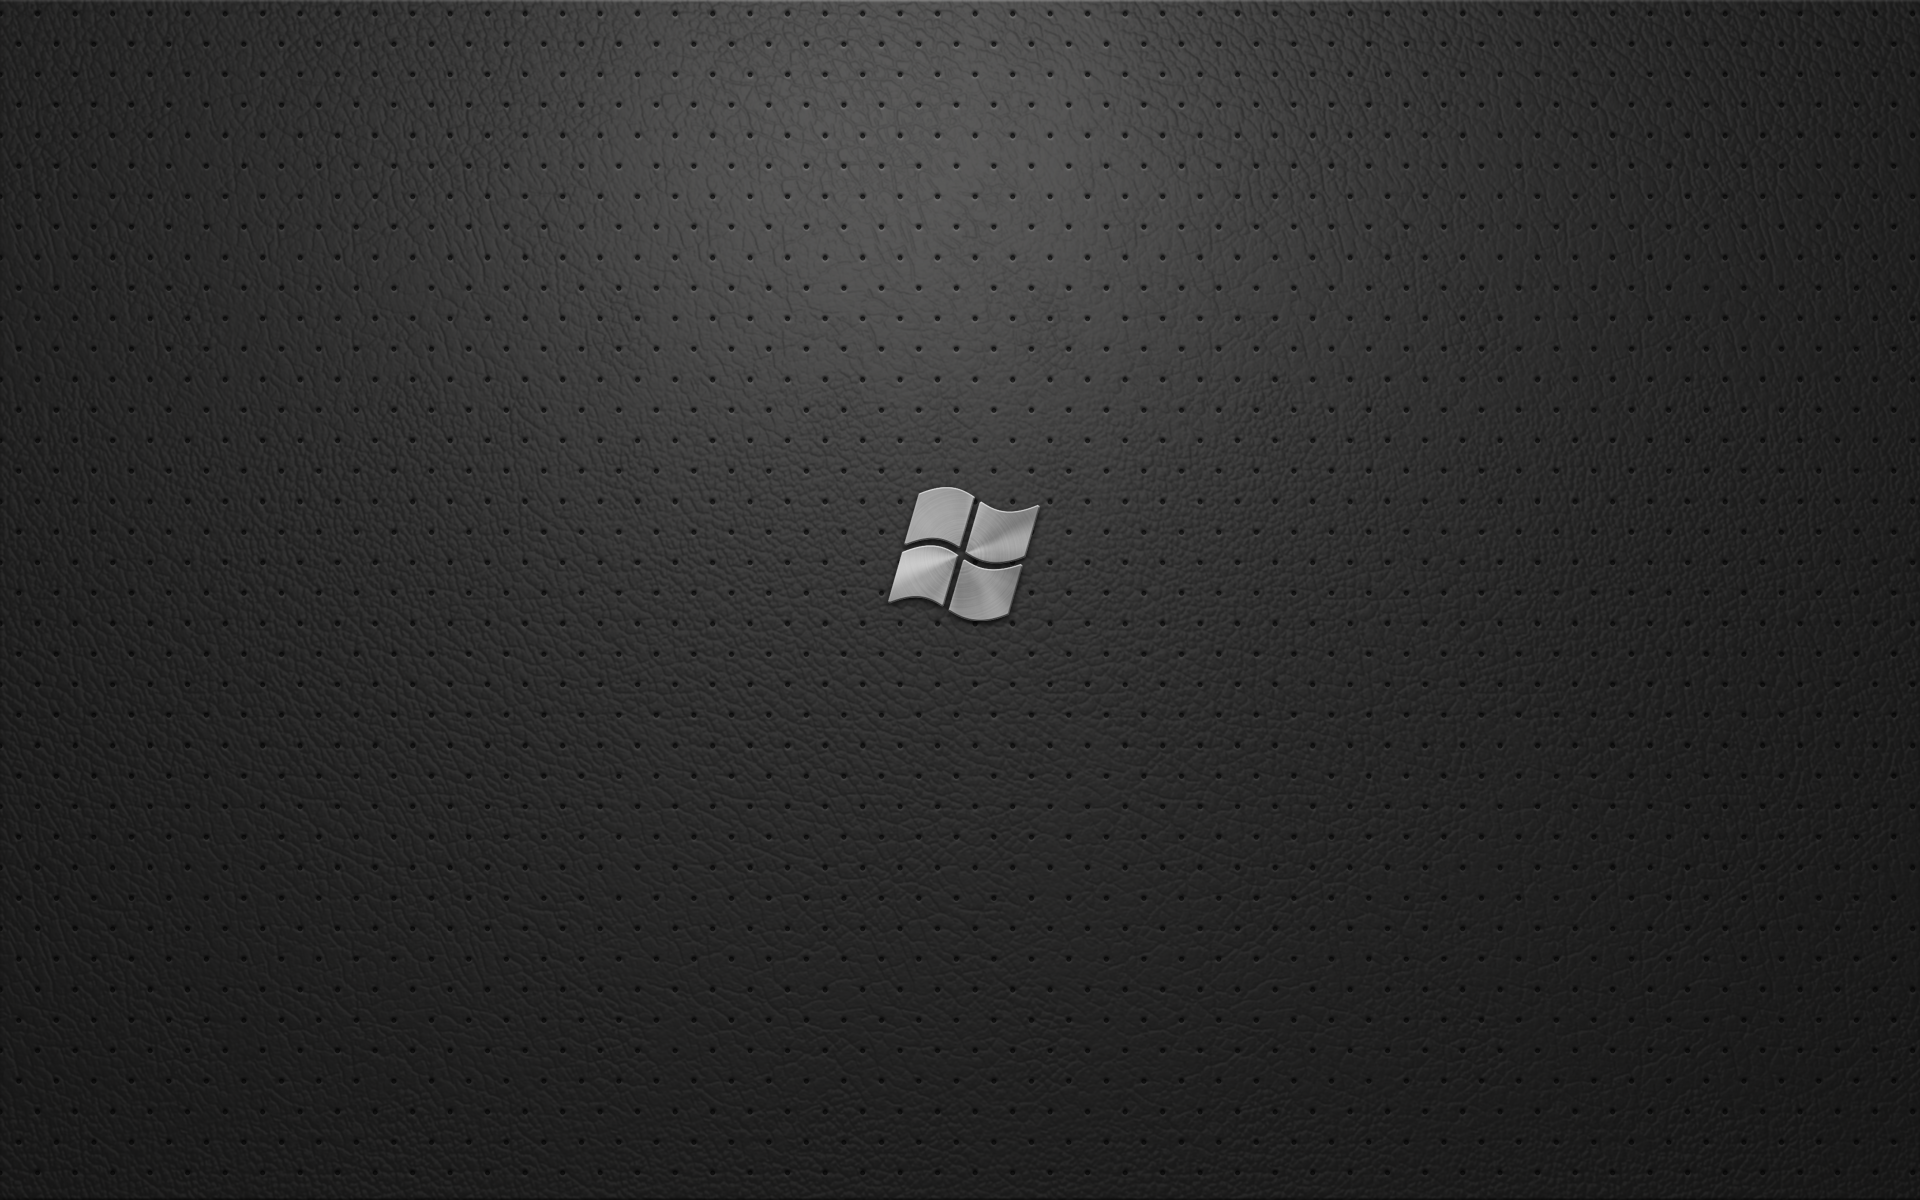 10154) Windows 7 Black High Quality Wallpaper Attachment - WalOps.com